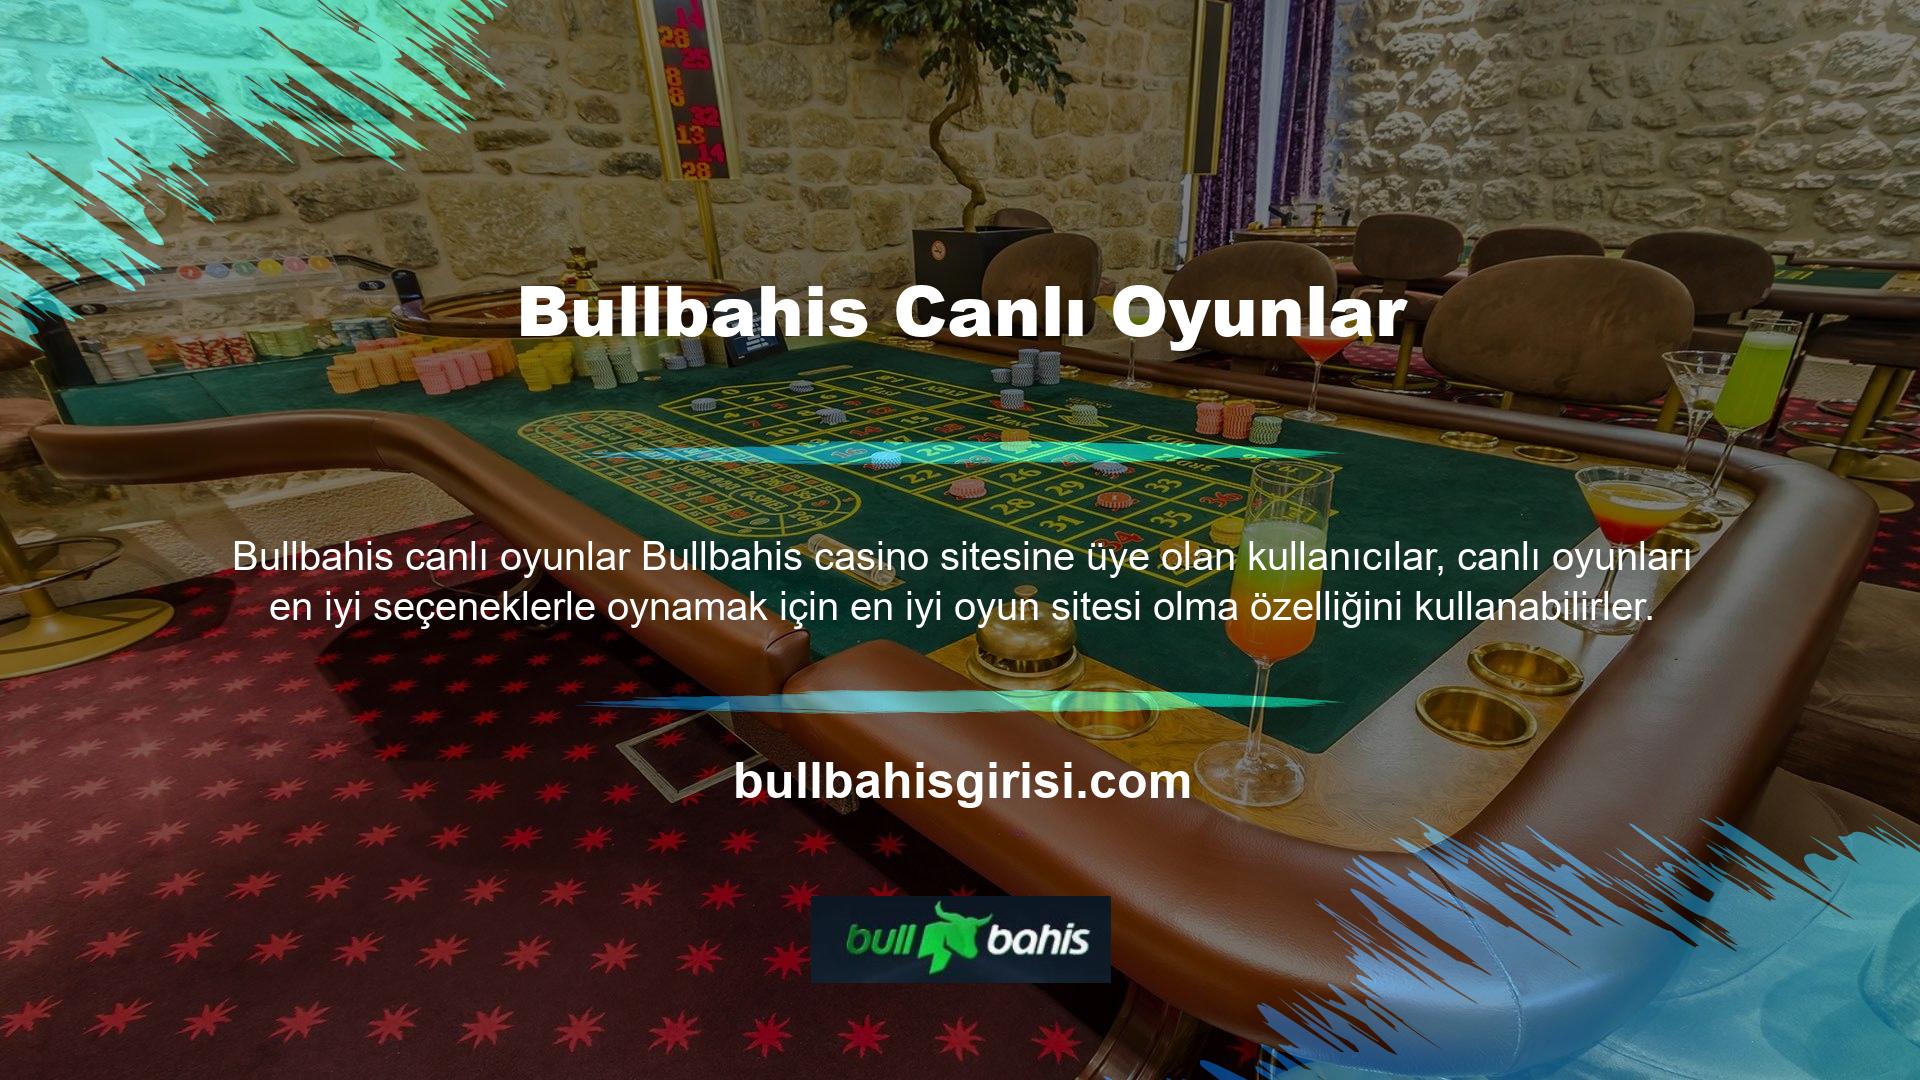 Bullbahis Canlı Casino oyunları için oluşturulan masalarda canlı krupiyeler bulunur